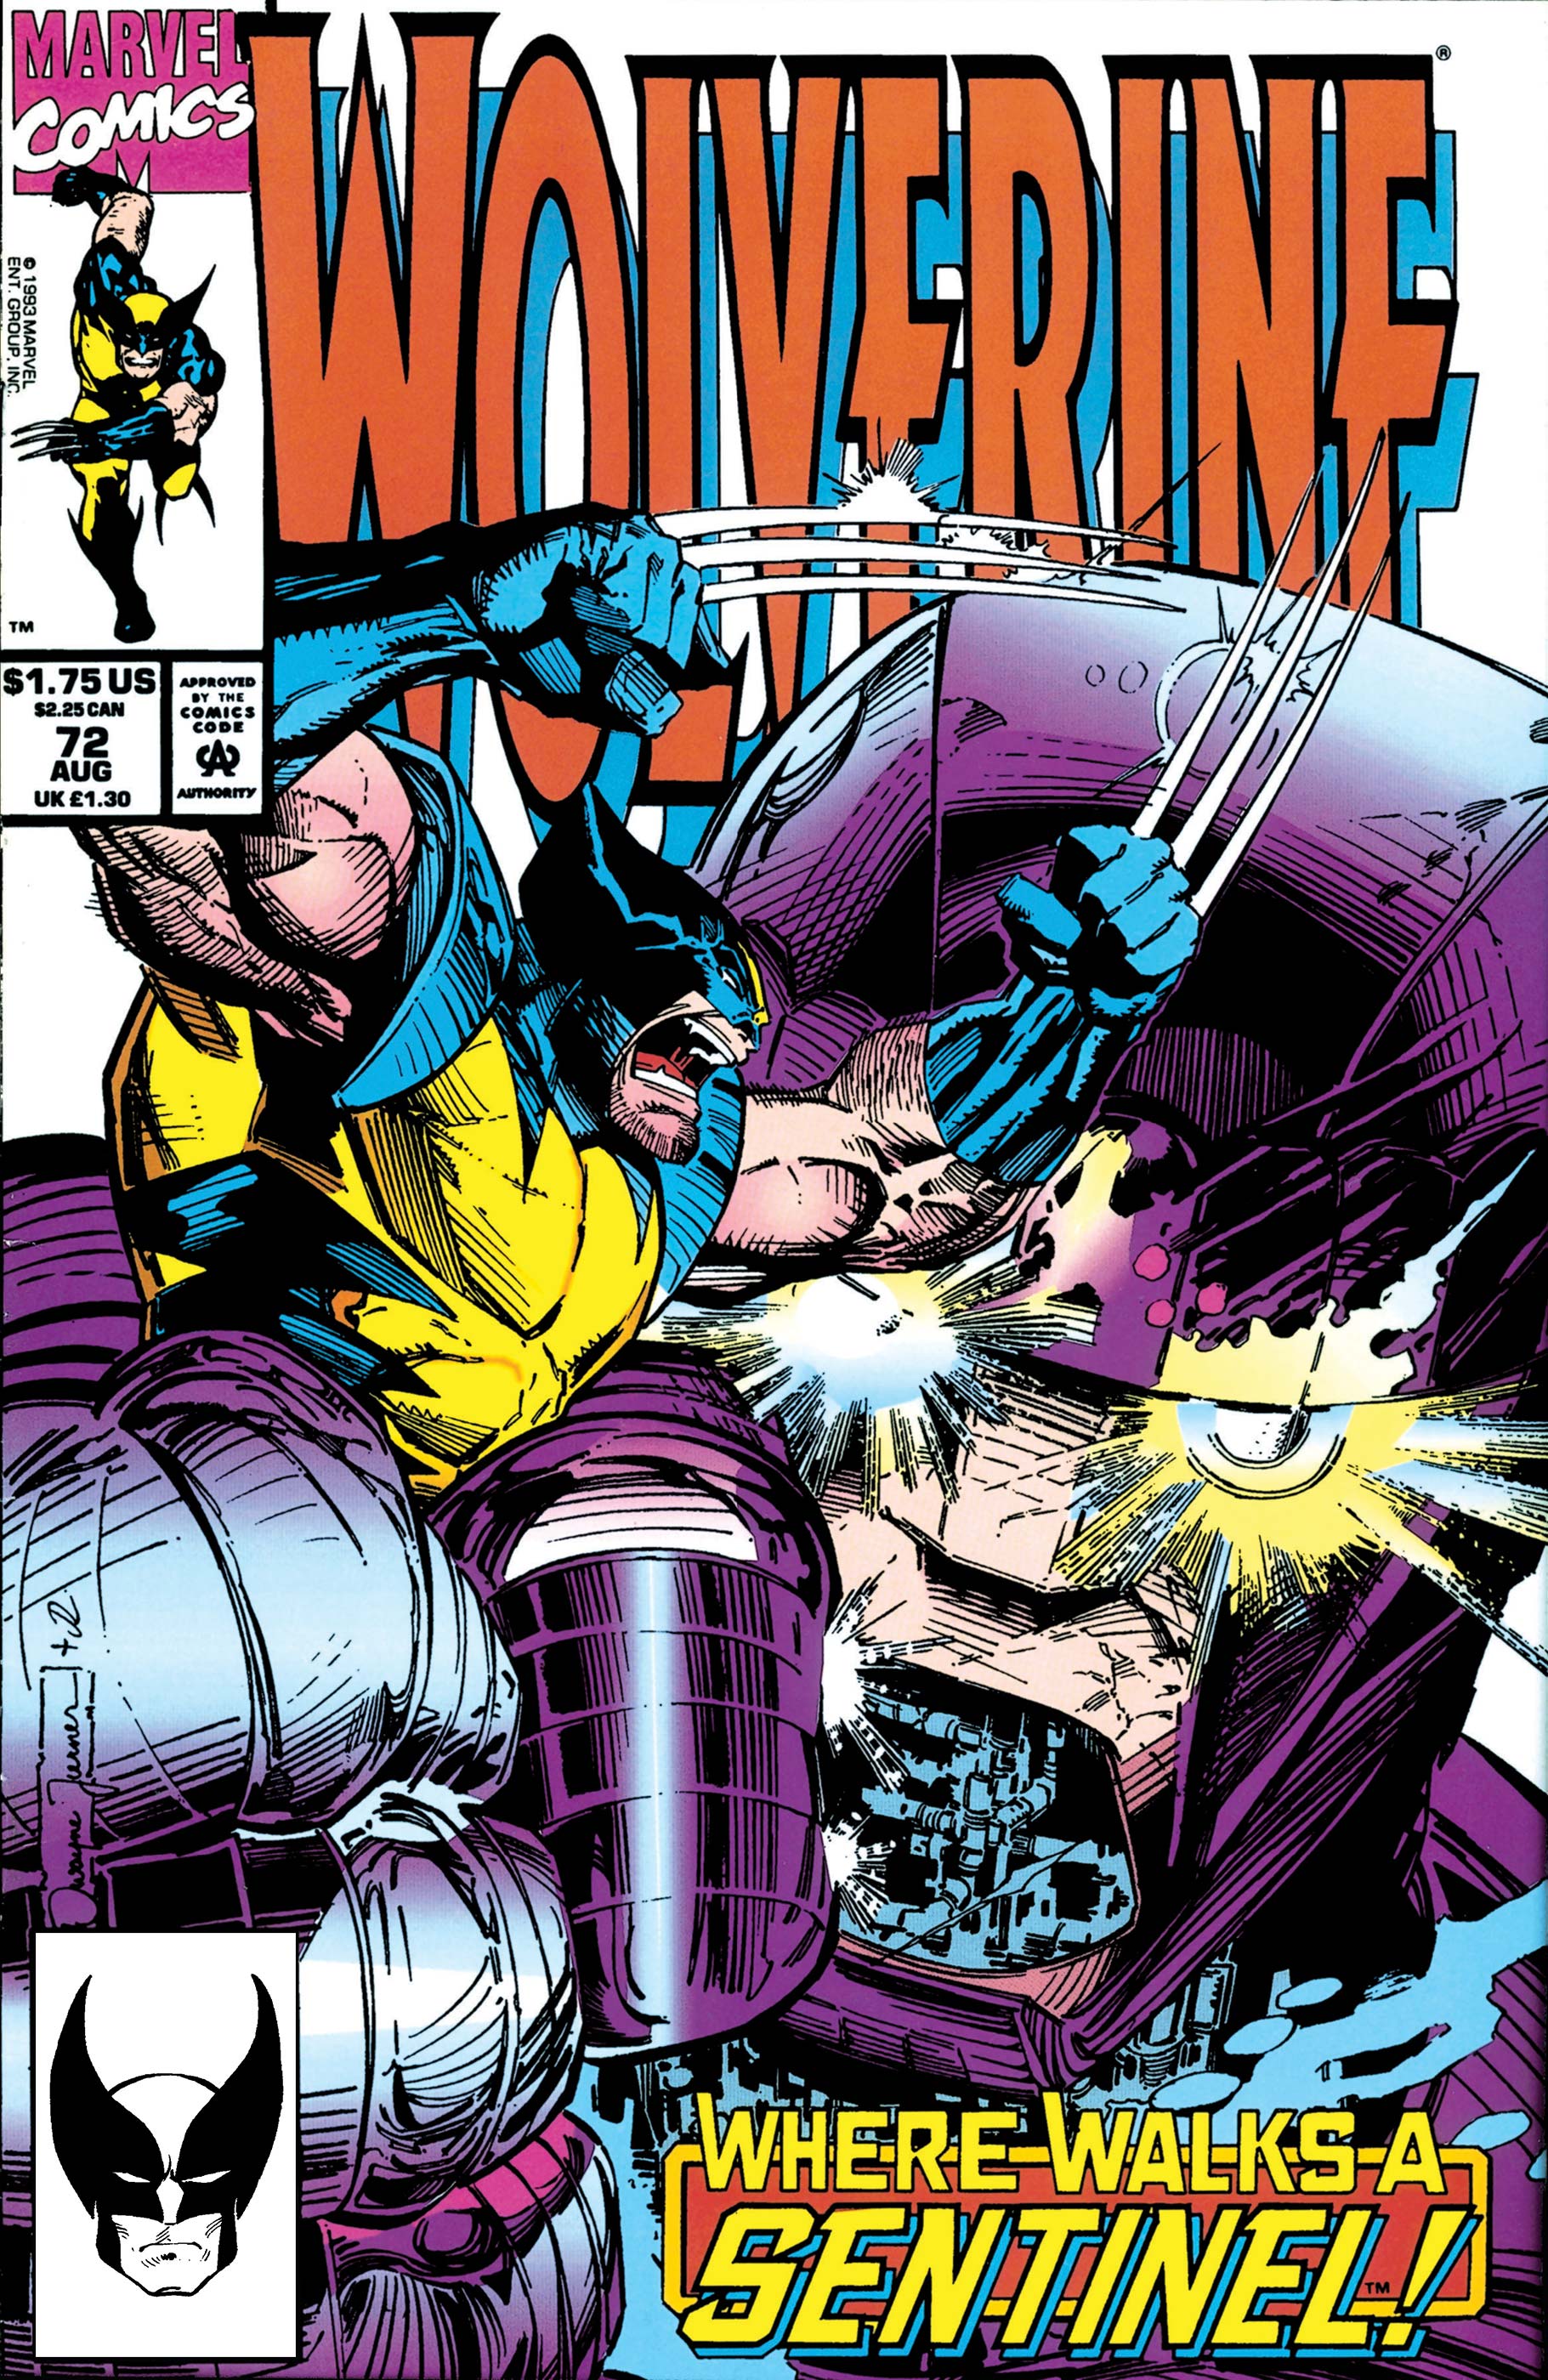 Wolverine (1988) #72